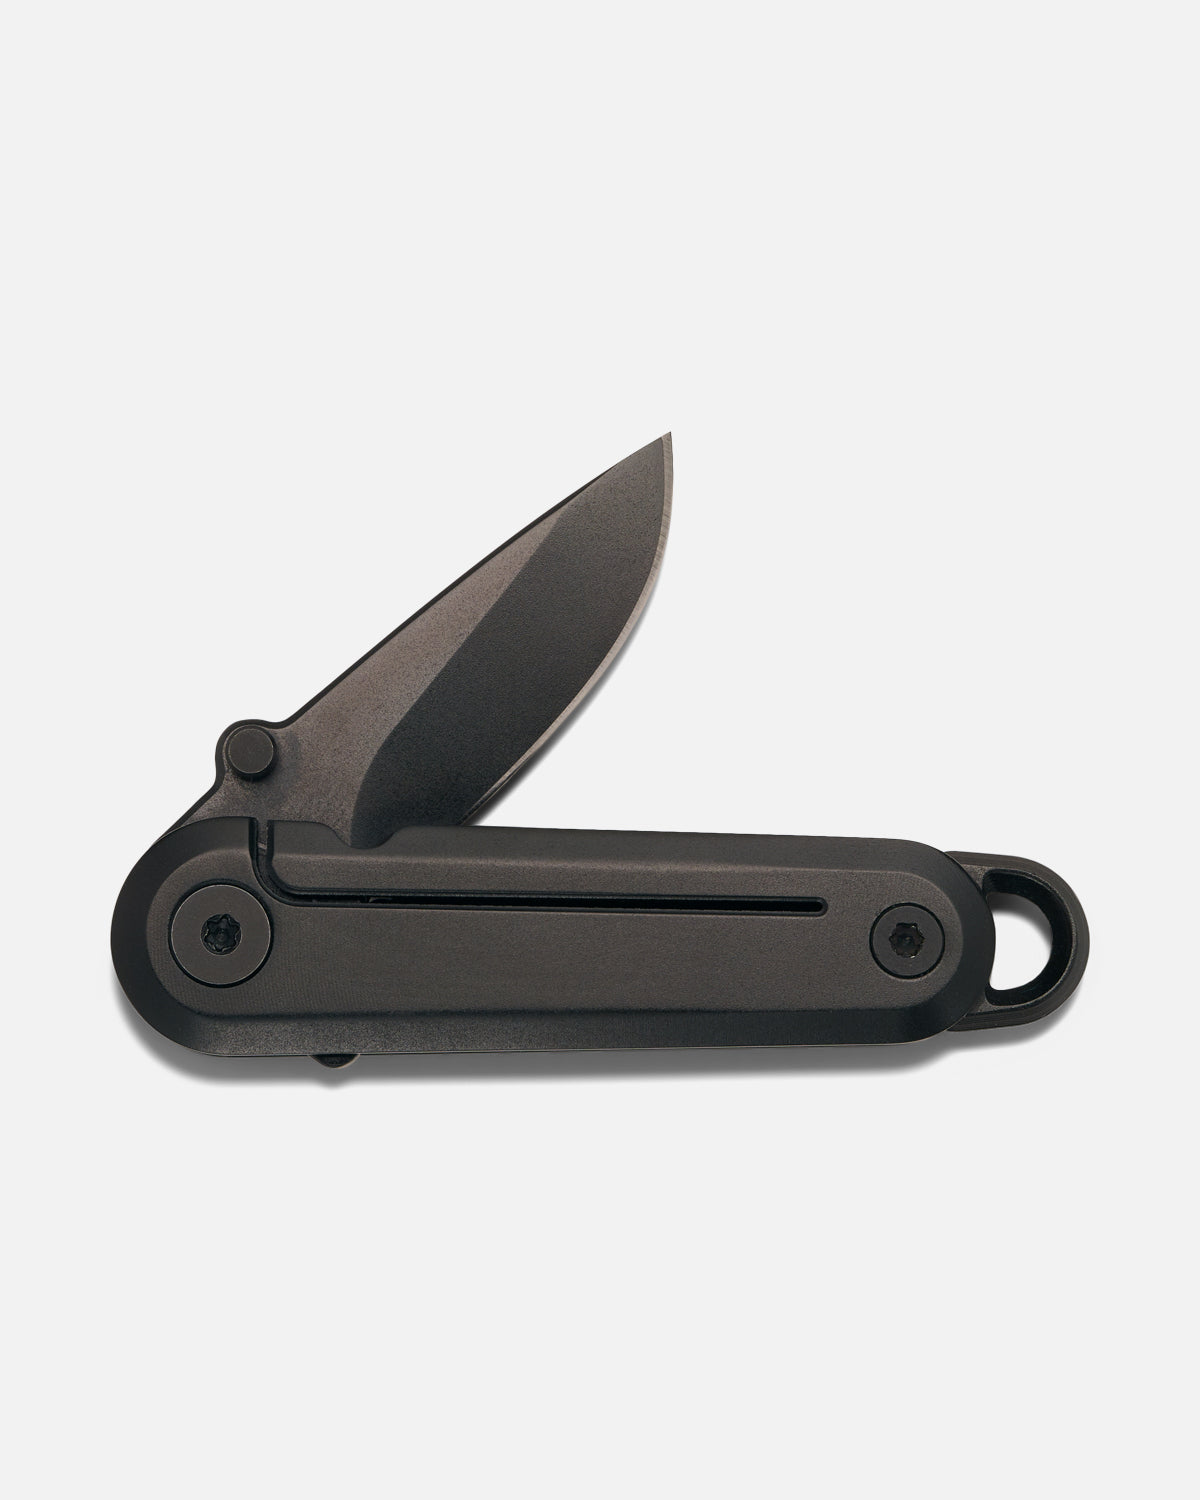 Key Knife - Black  Daily Carry Folding Knife